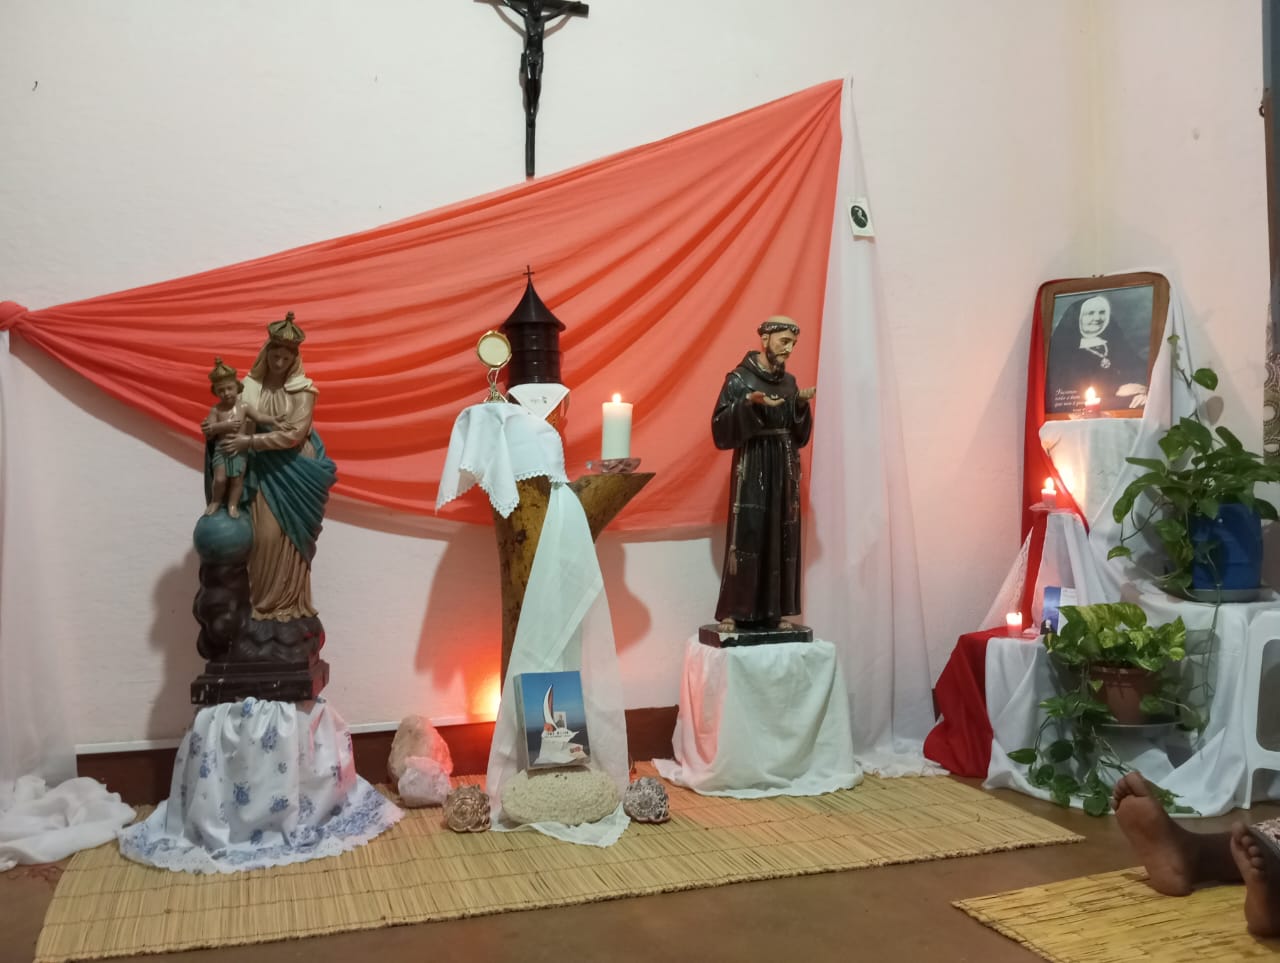 Comunidade Santa Tresinha do Menino Jesus - Carapira, Moçambique